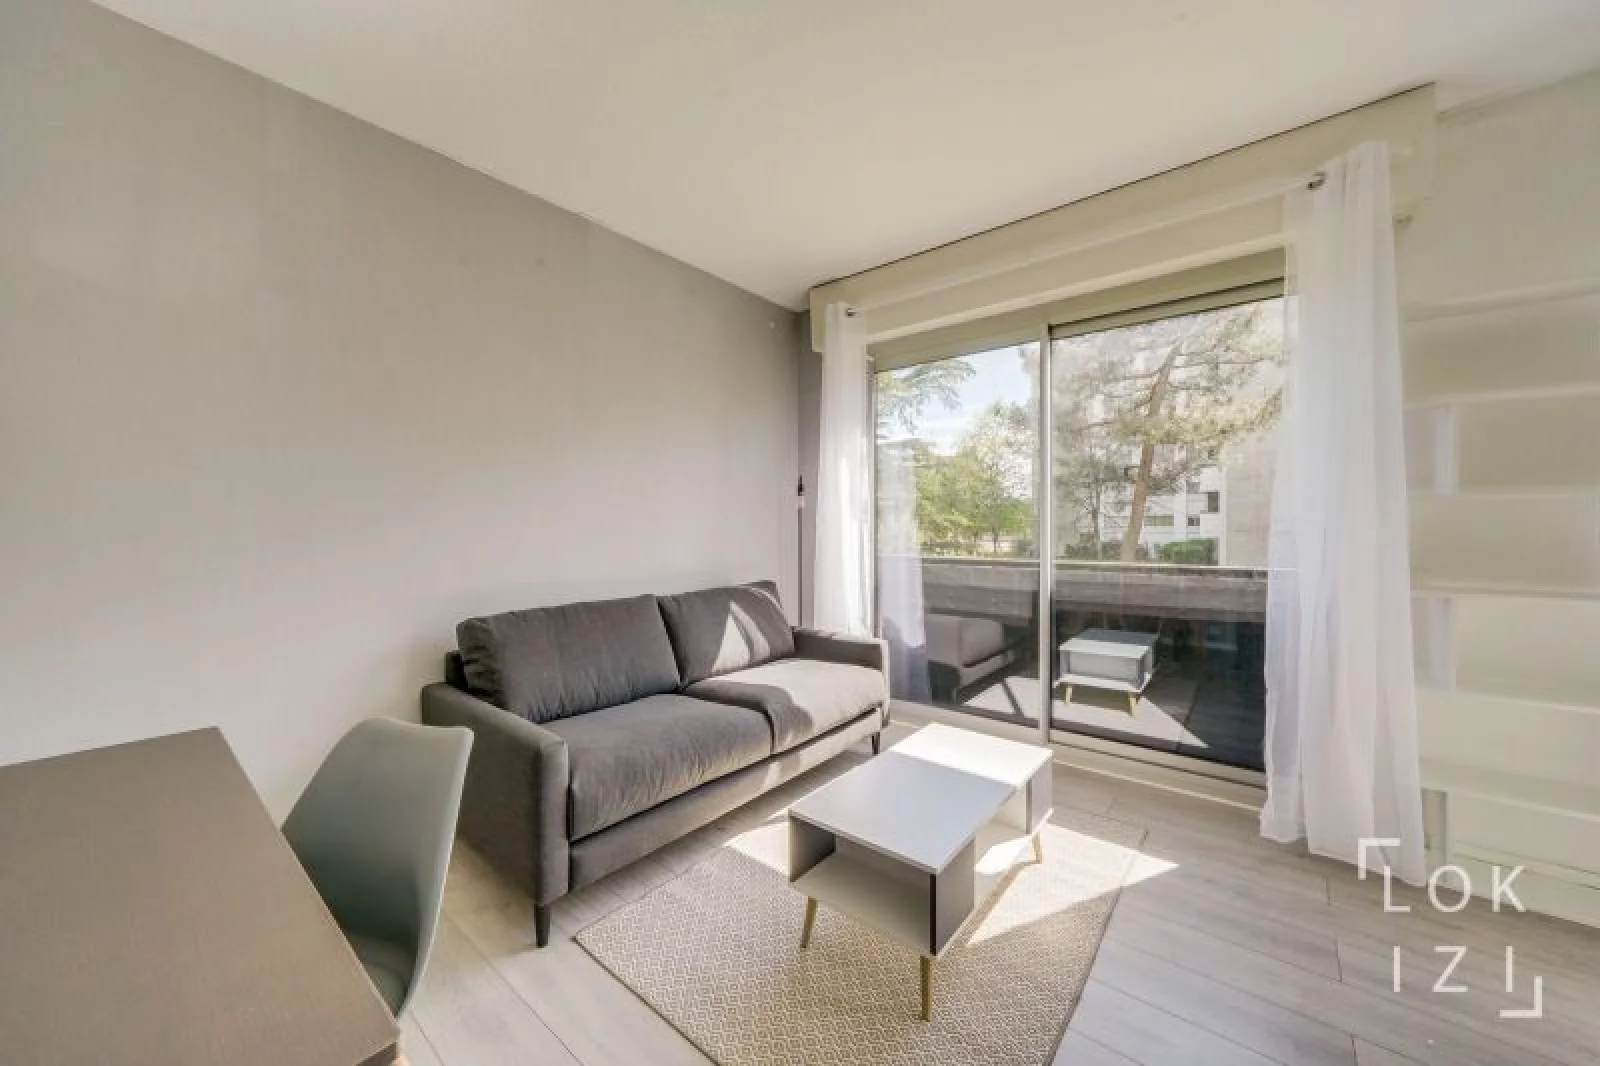 Location appartement meublé T1bis 29m² (Bordeaux - Caudéran)